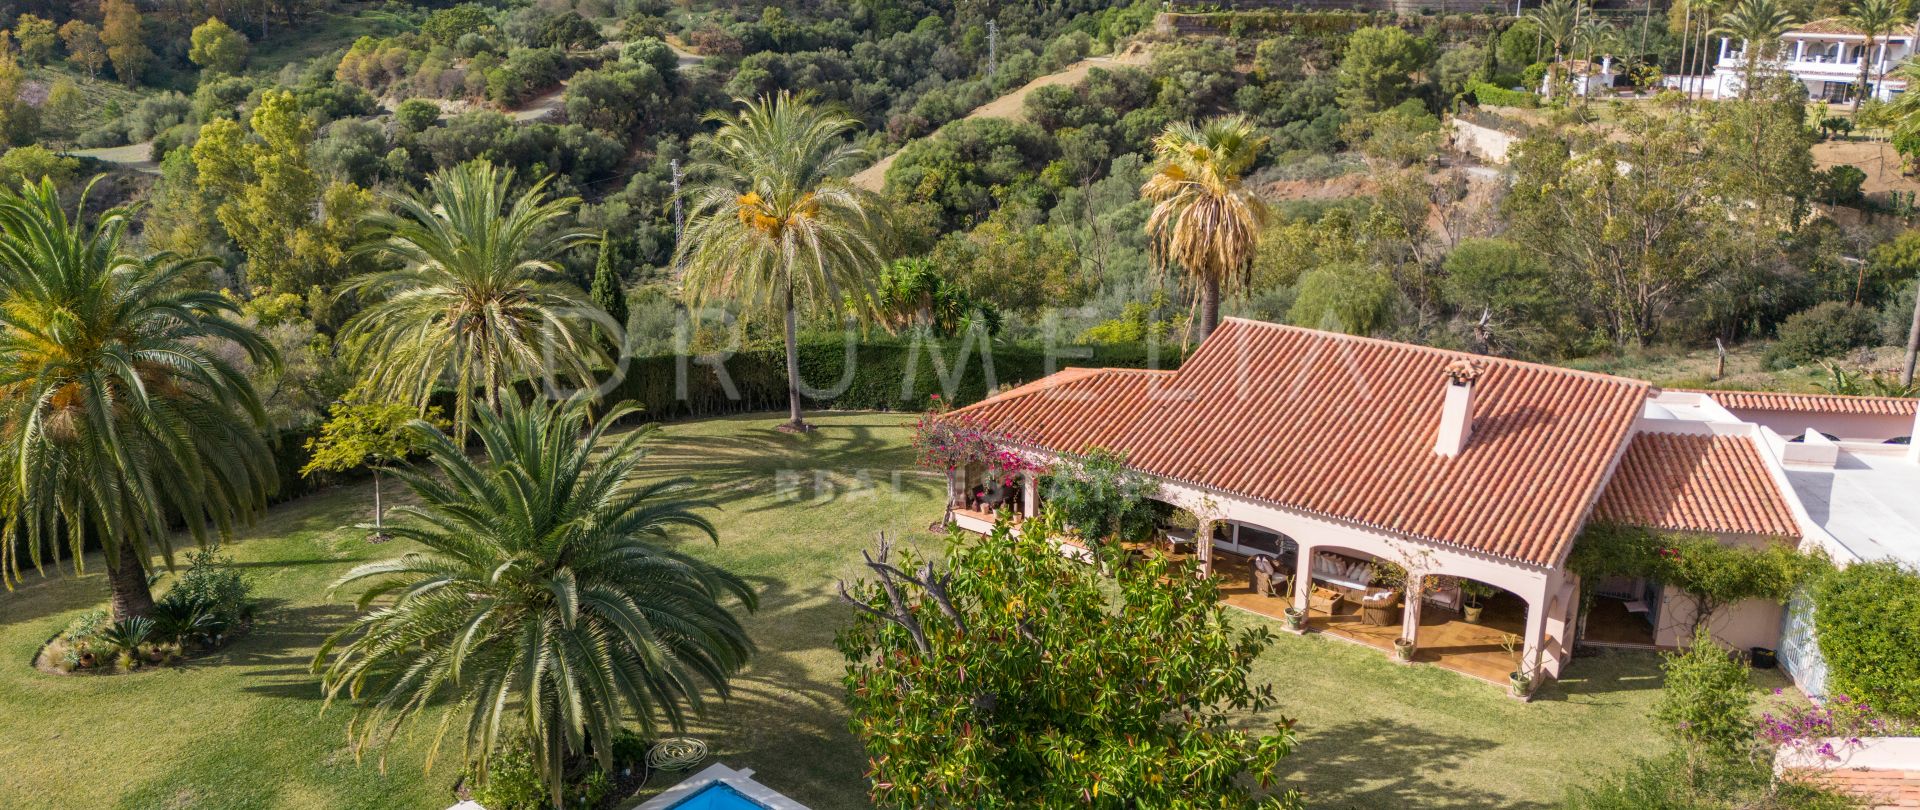 Vol Andalusische charme, villa te koop in het mooie Benahavis